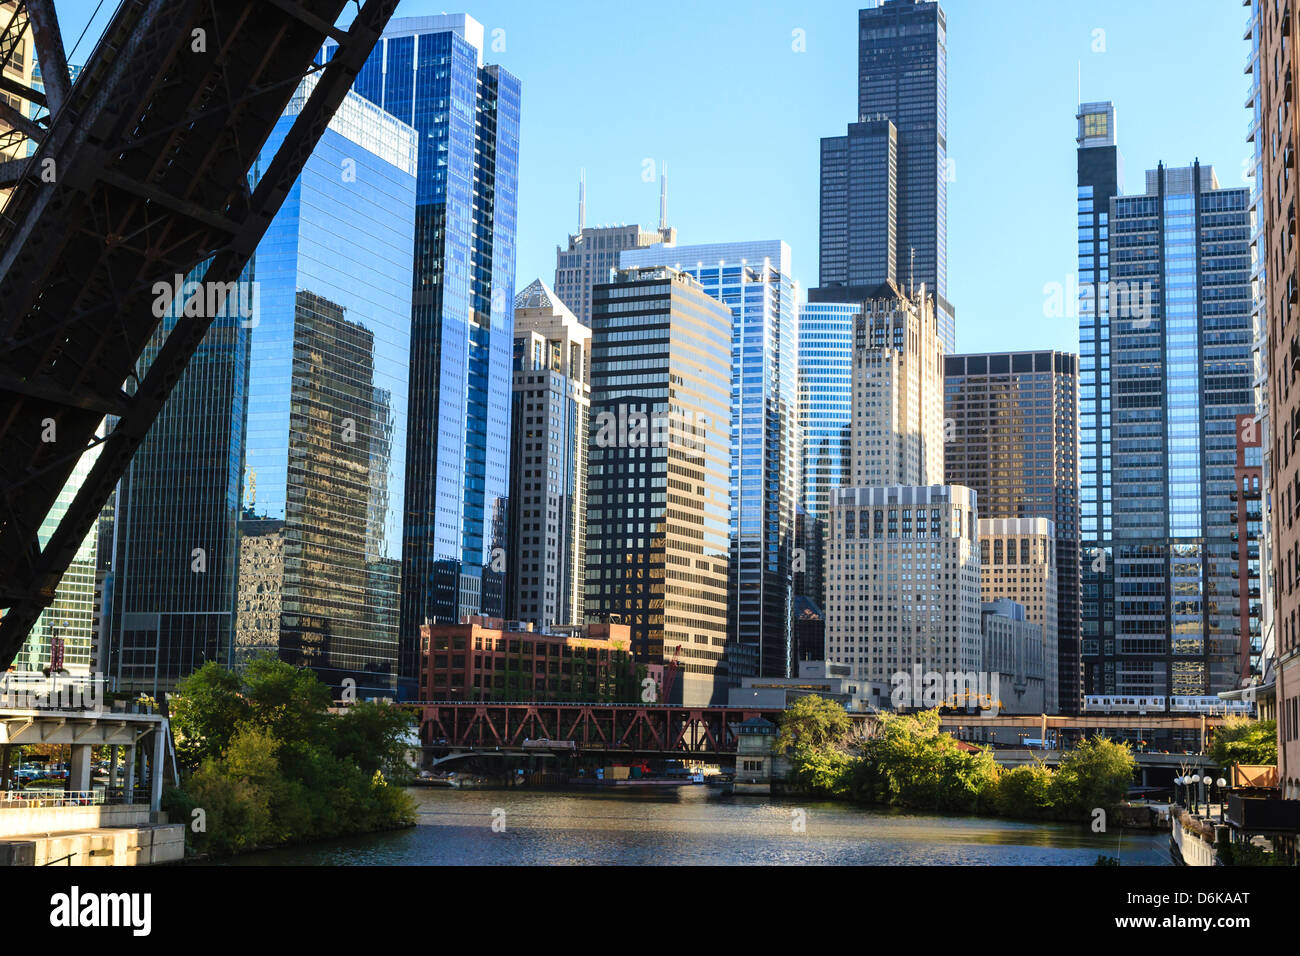 Chicago River e torri del West Loop area, Willis Tower, precedentemente Sears Tower in background, Chicago, Illinois, Stati Uniti d'America Foto Stock